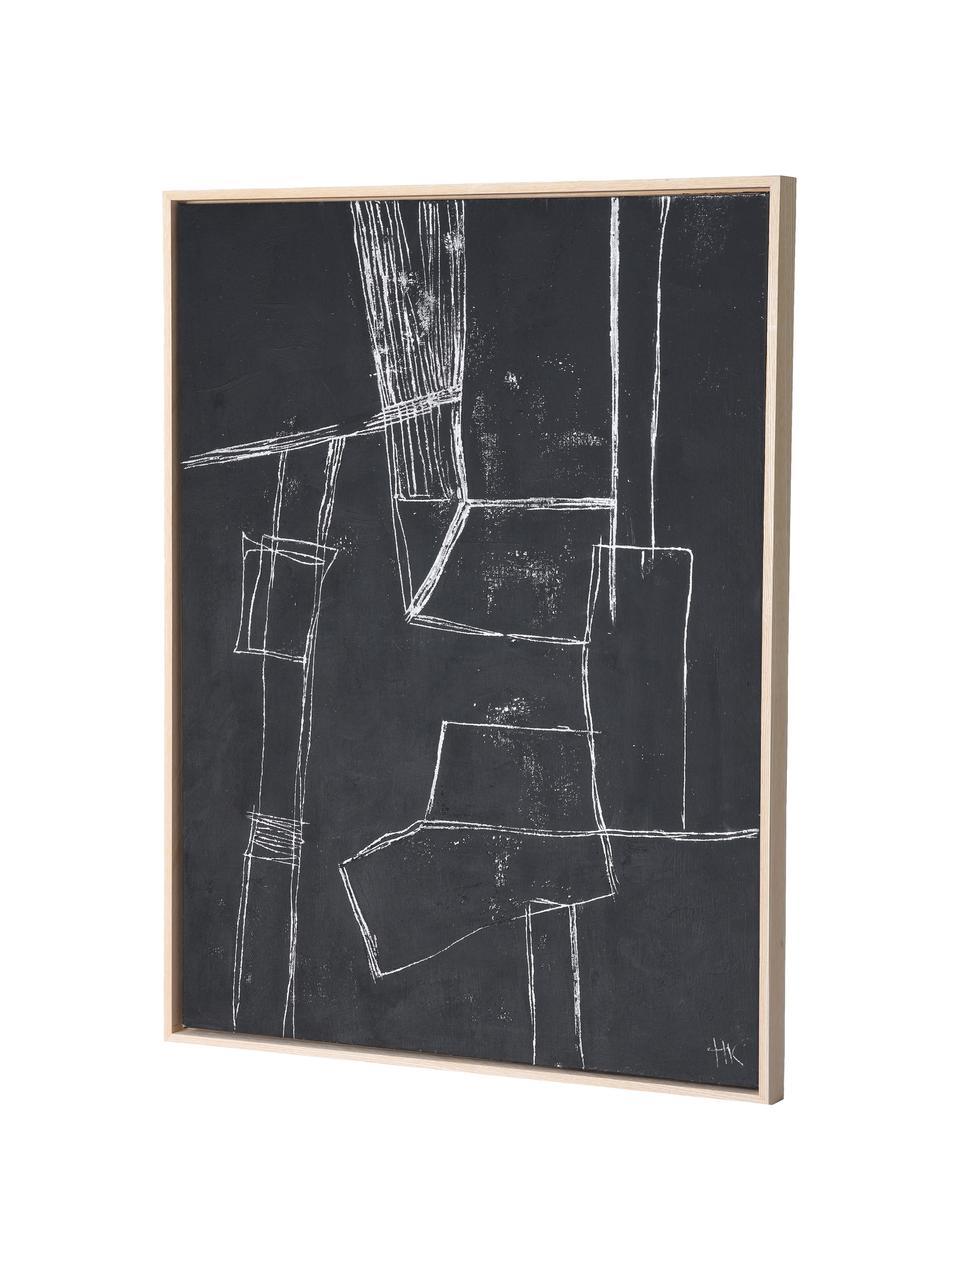 Gerahmtes Leinwandbild Brutalism, Bild: Leinwand, Farbe, Rahmen: Eschenholz, Schwarz, Weiss, B 60 x H 80 cm